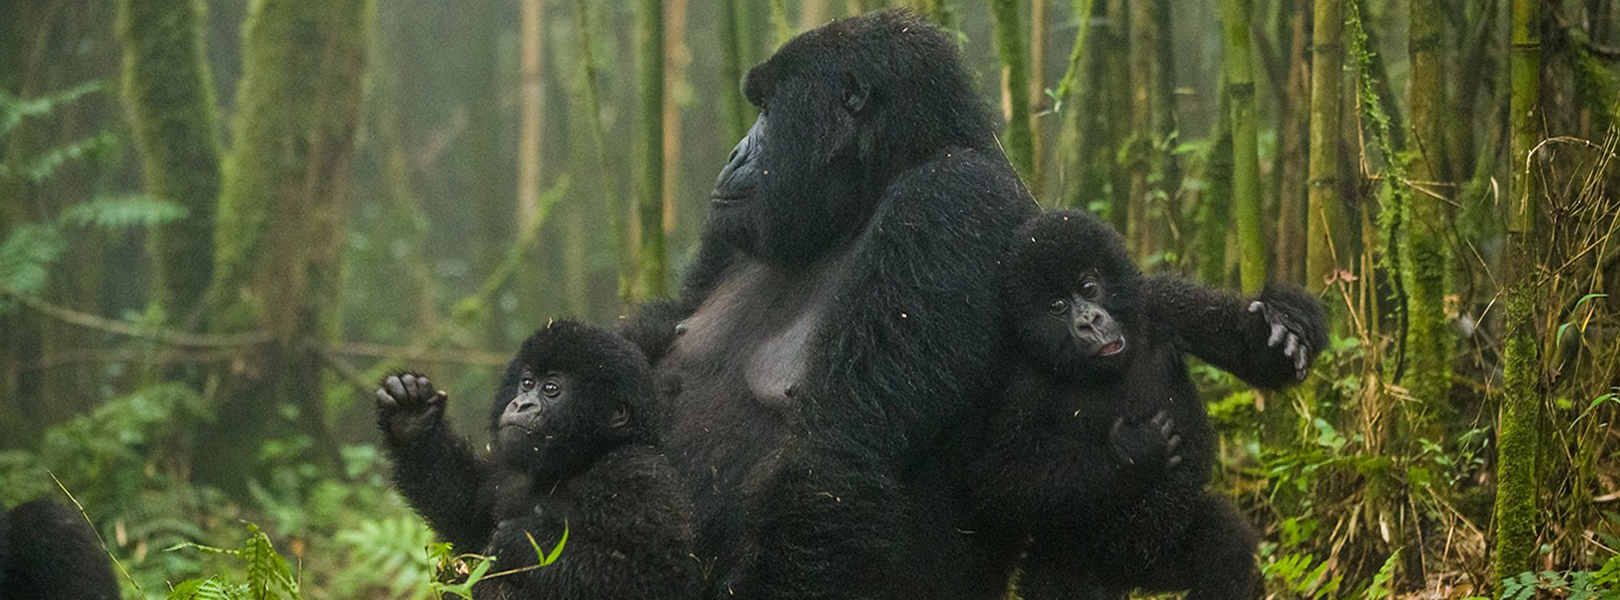 7 Days Gorilla Trekking & Wildlife Safari Holiday Rwanda